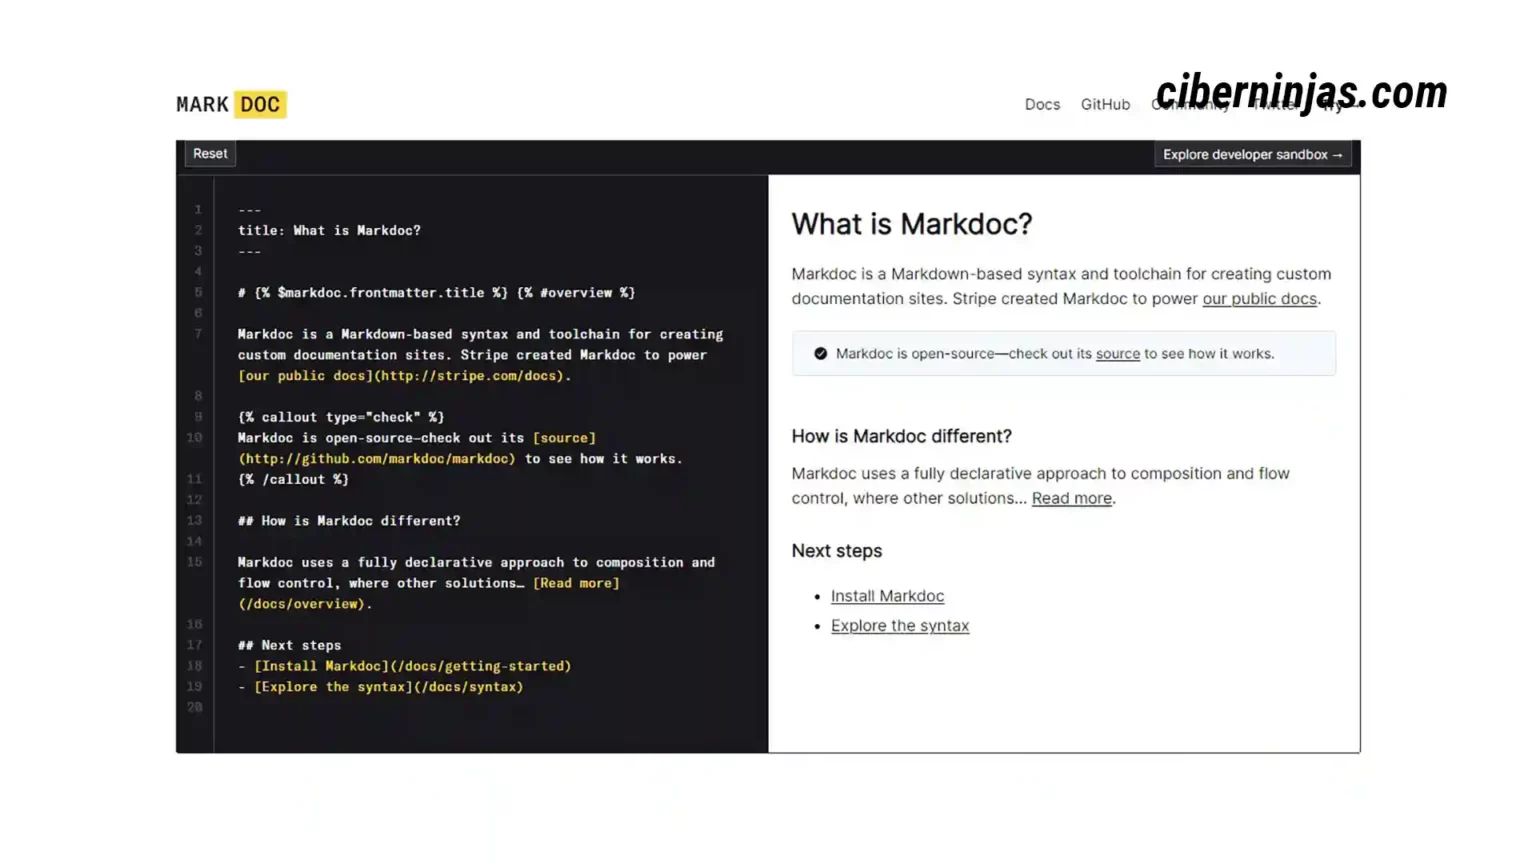 Markdoc: Framework para la creación de documentación basado en Markdown desarrollado por Stripe